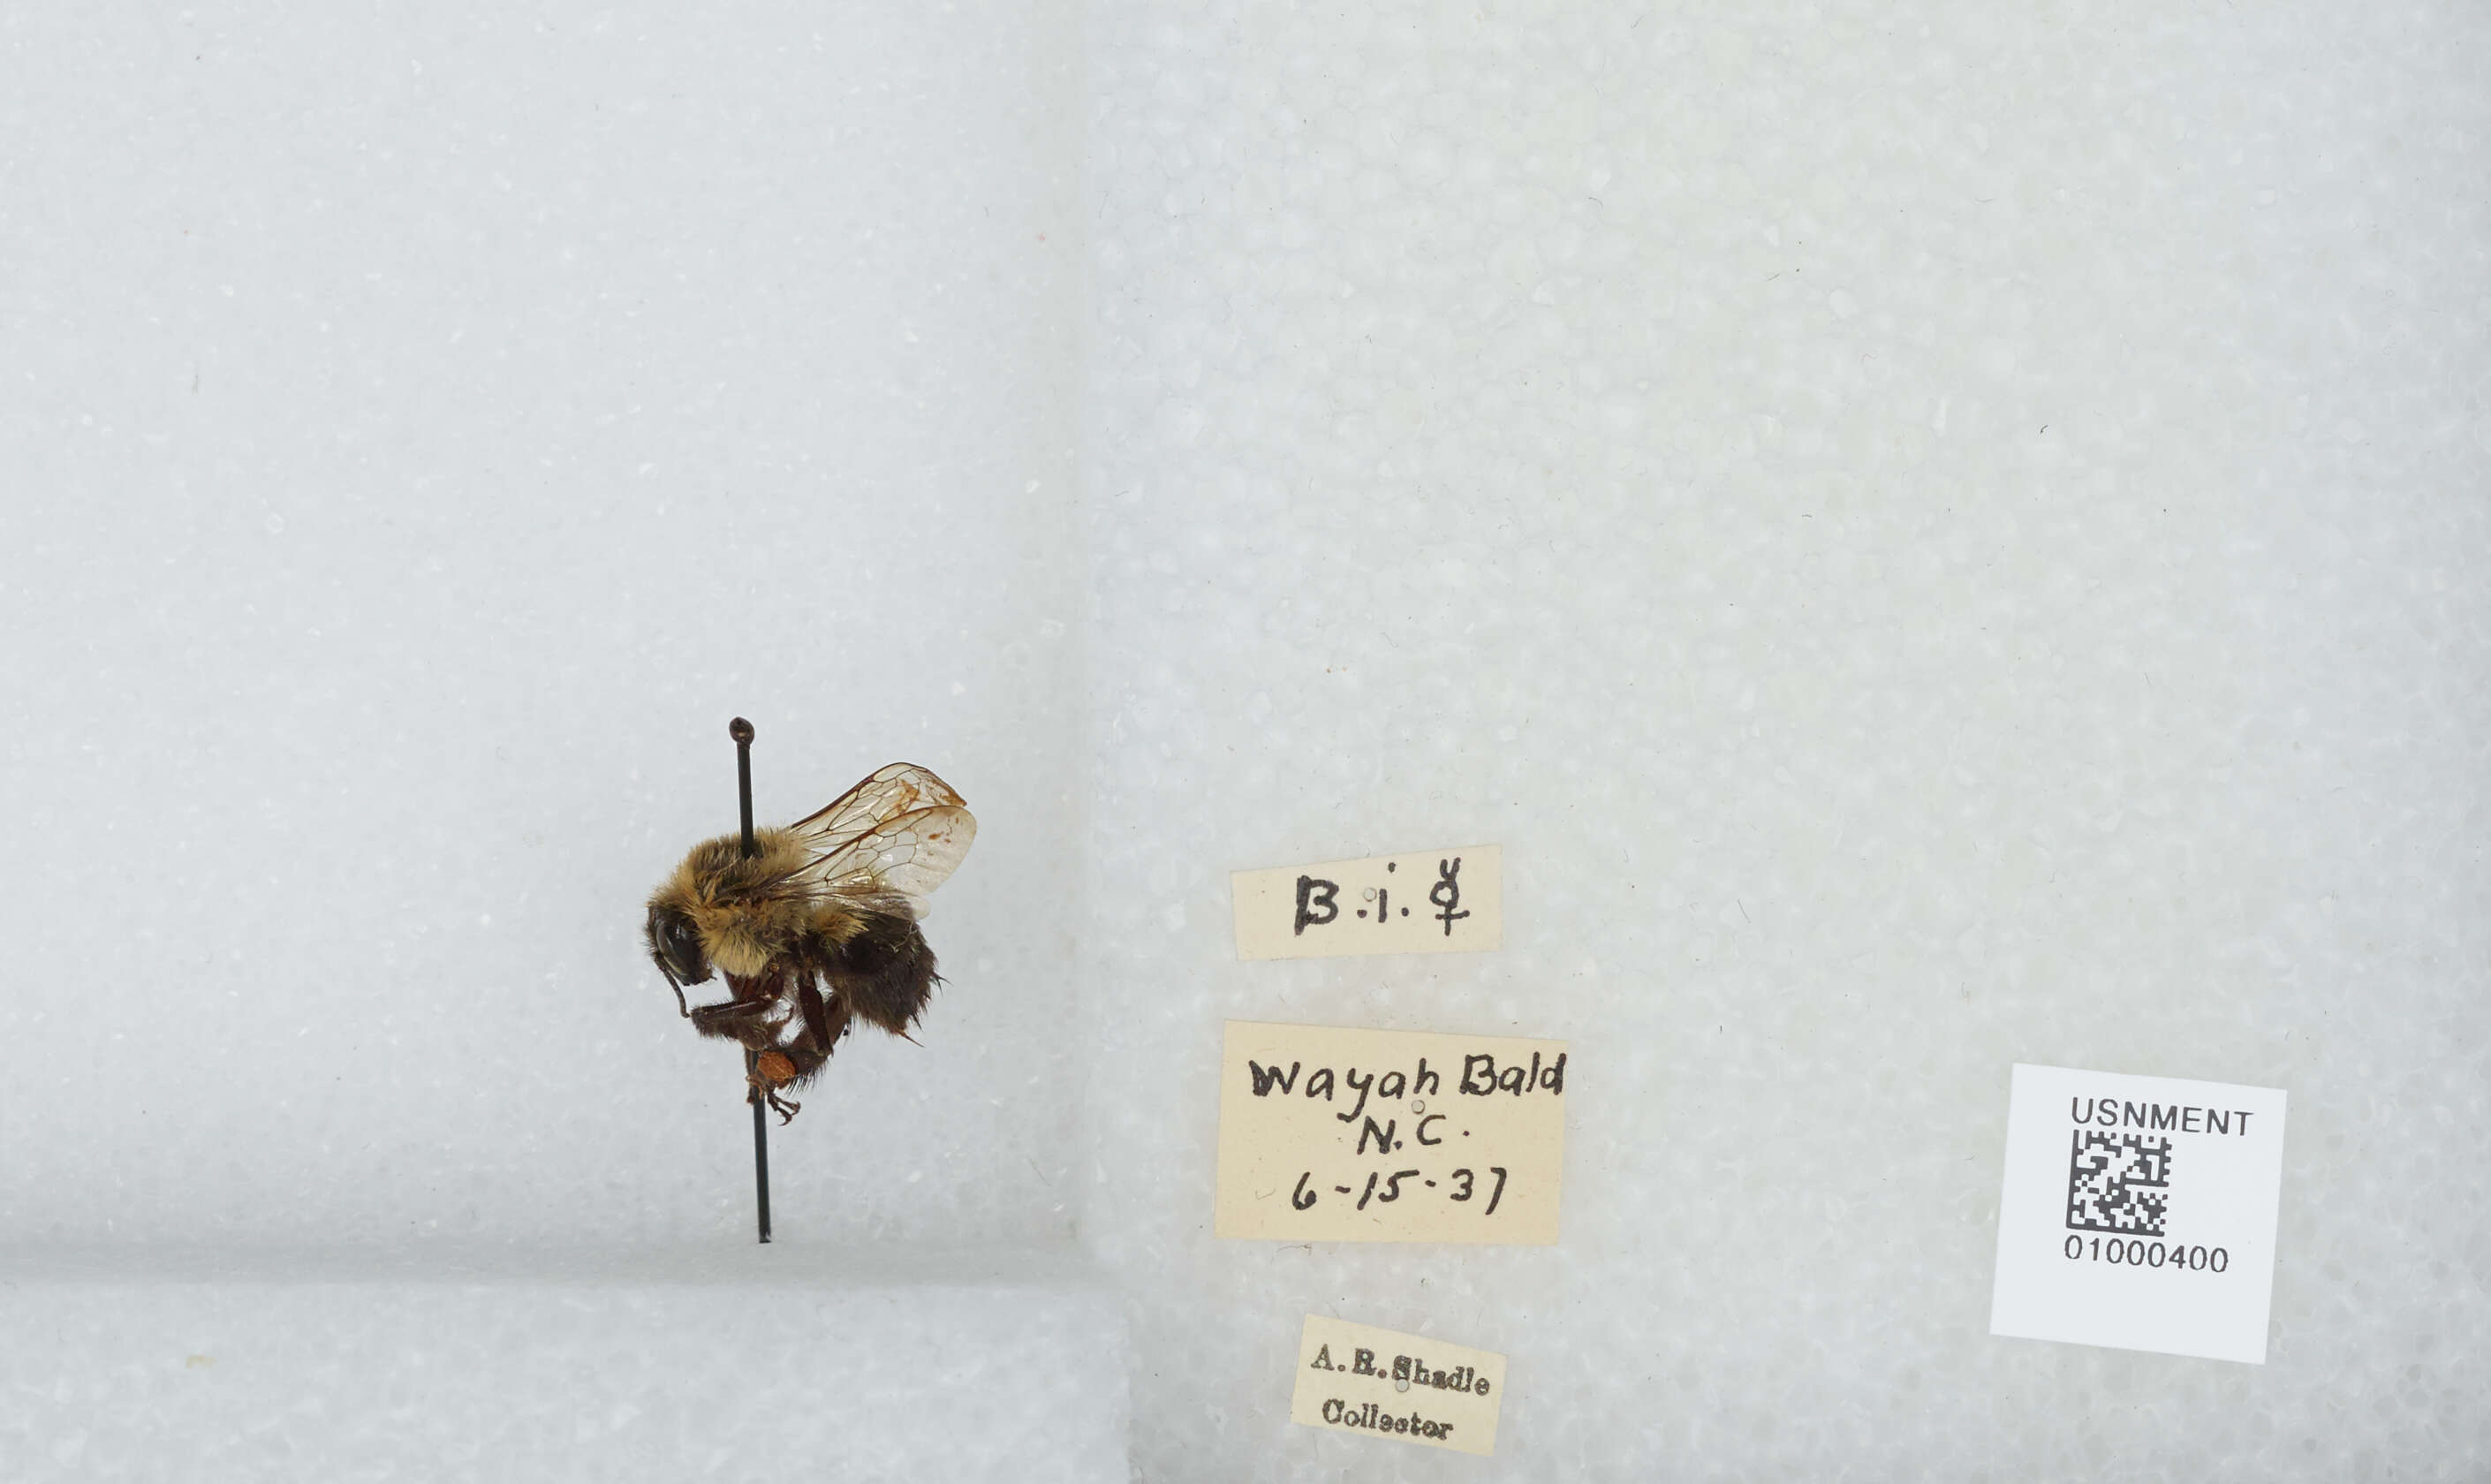 Image of Common Eastern Bumblebee